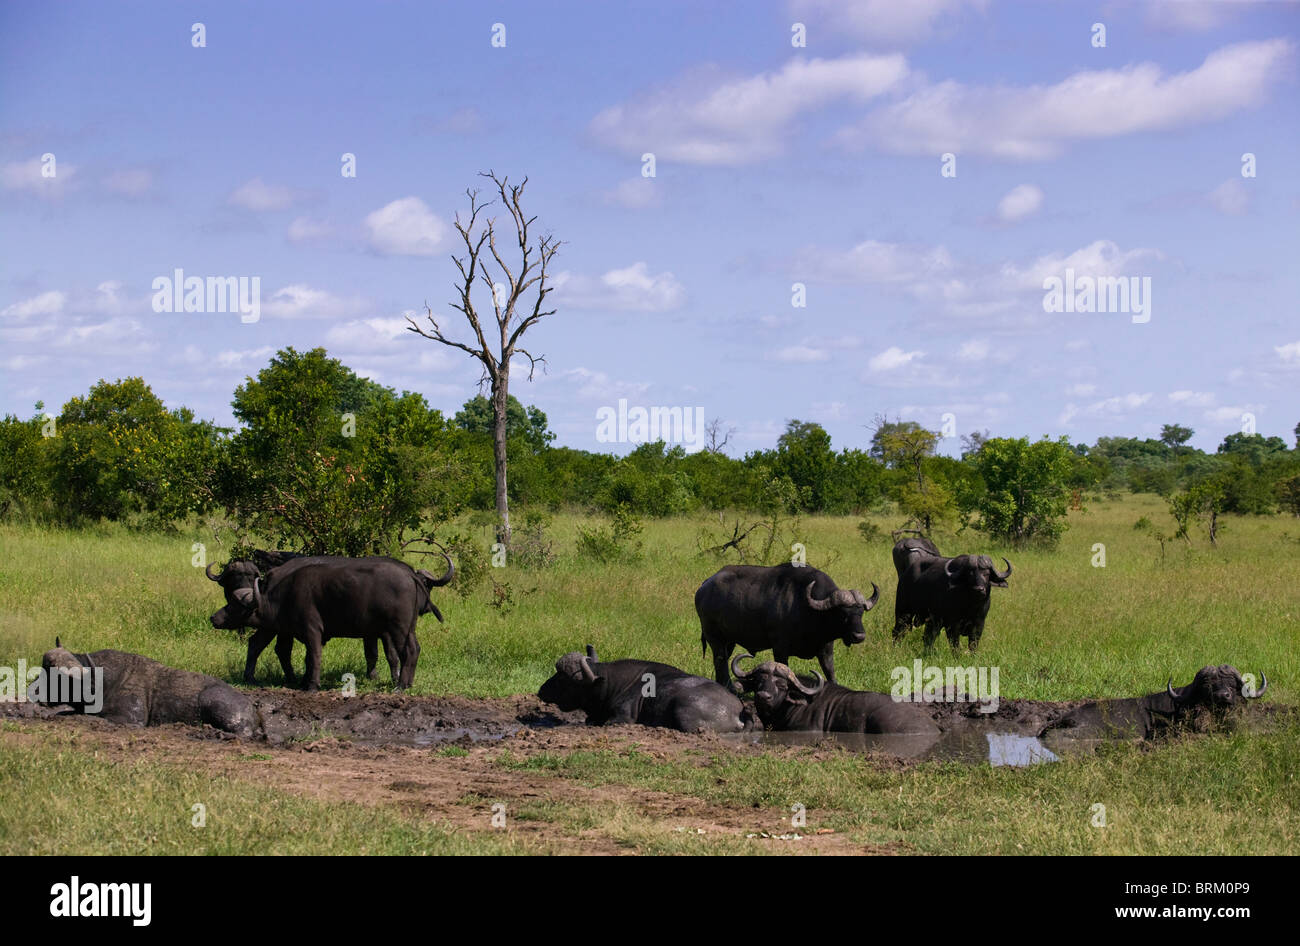 Vue panoramique d'un troupeau de buffles africains se vautrer dans une casserole dans une savane ouverte Banque D'Images